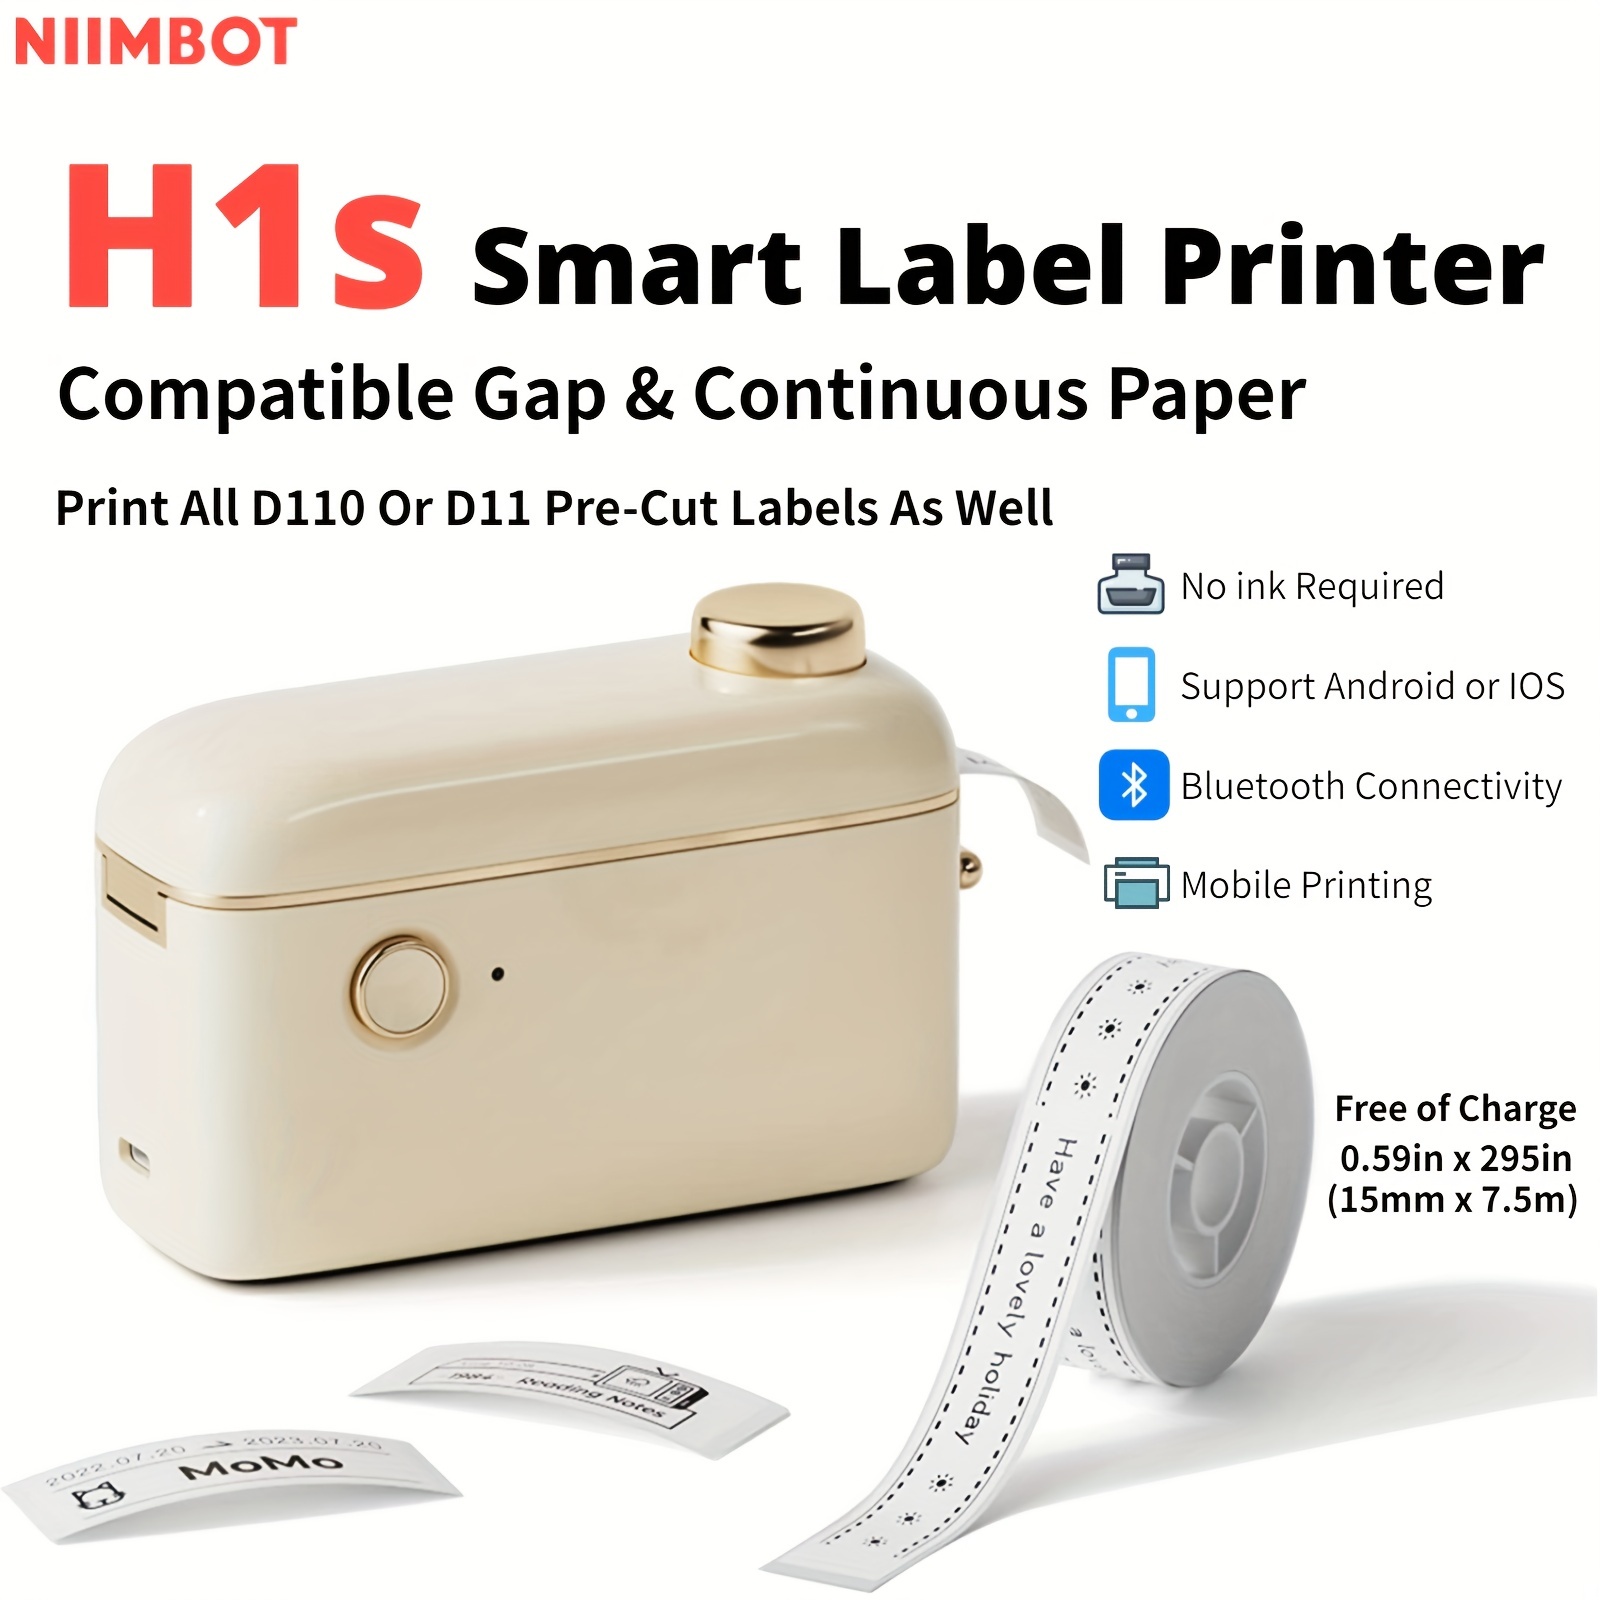 Ruban d'étiqueteuse Compatible pour NIIMBOT D11 D110, papier d'imprimante d' étiquettes étanche Anti-huile autocollant résistant aux rayures 